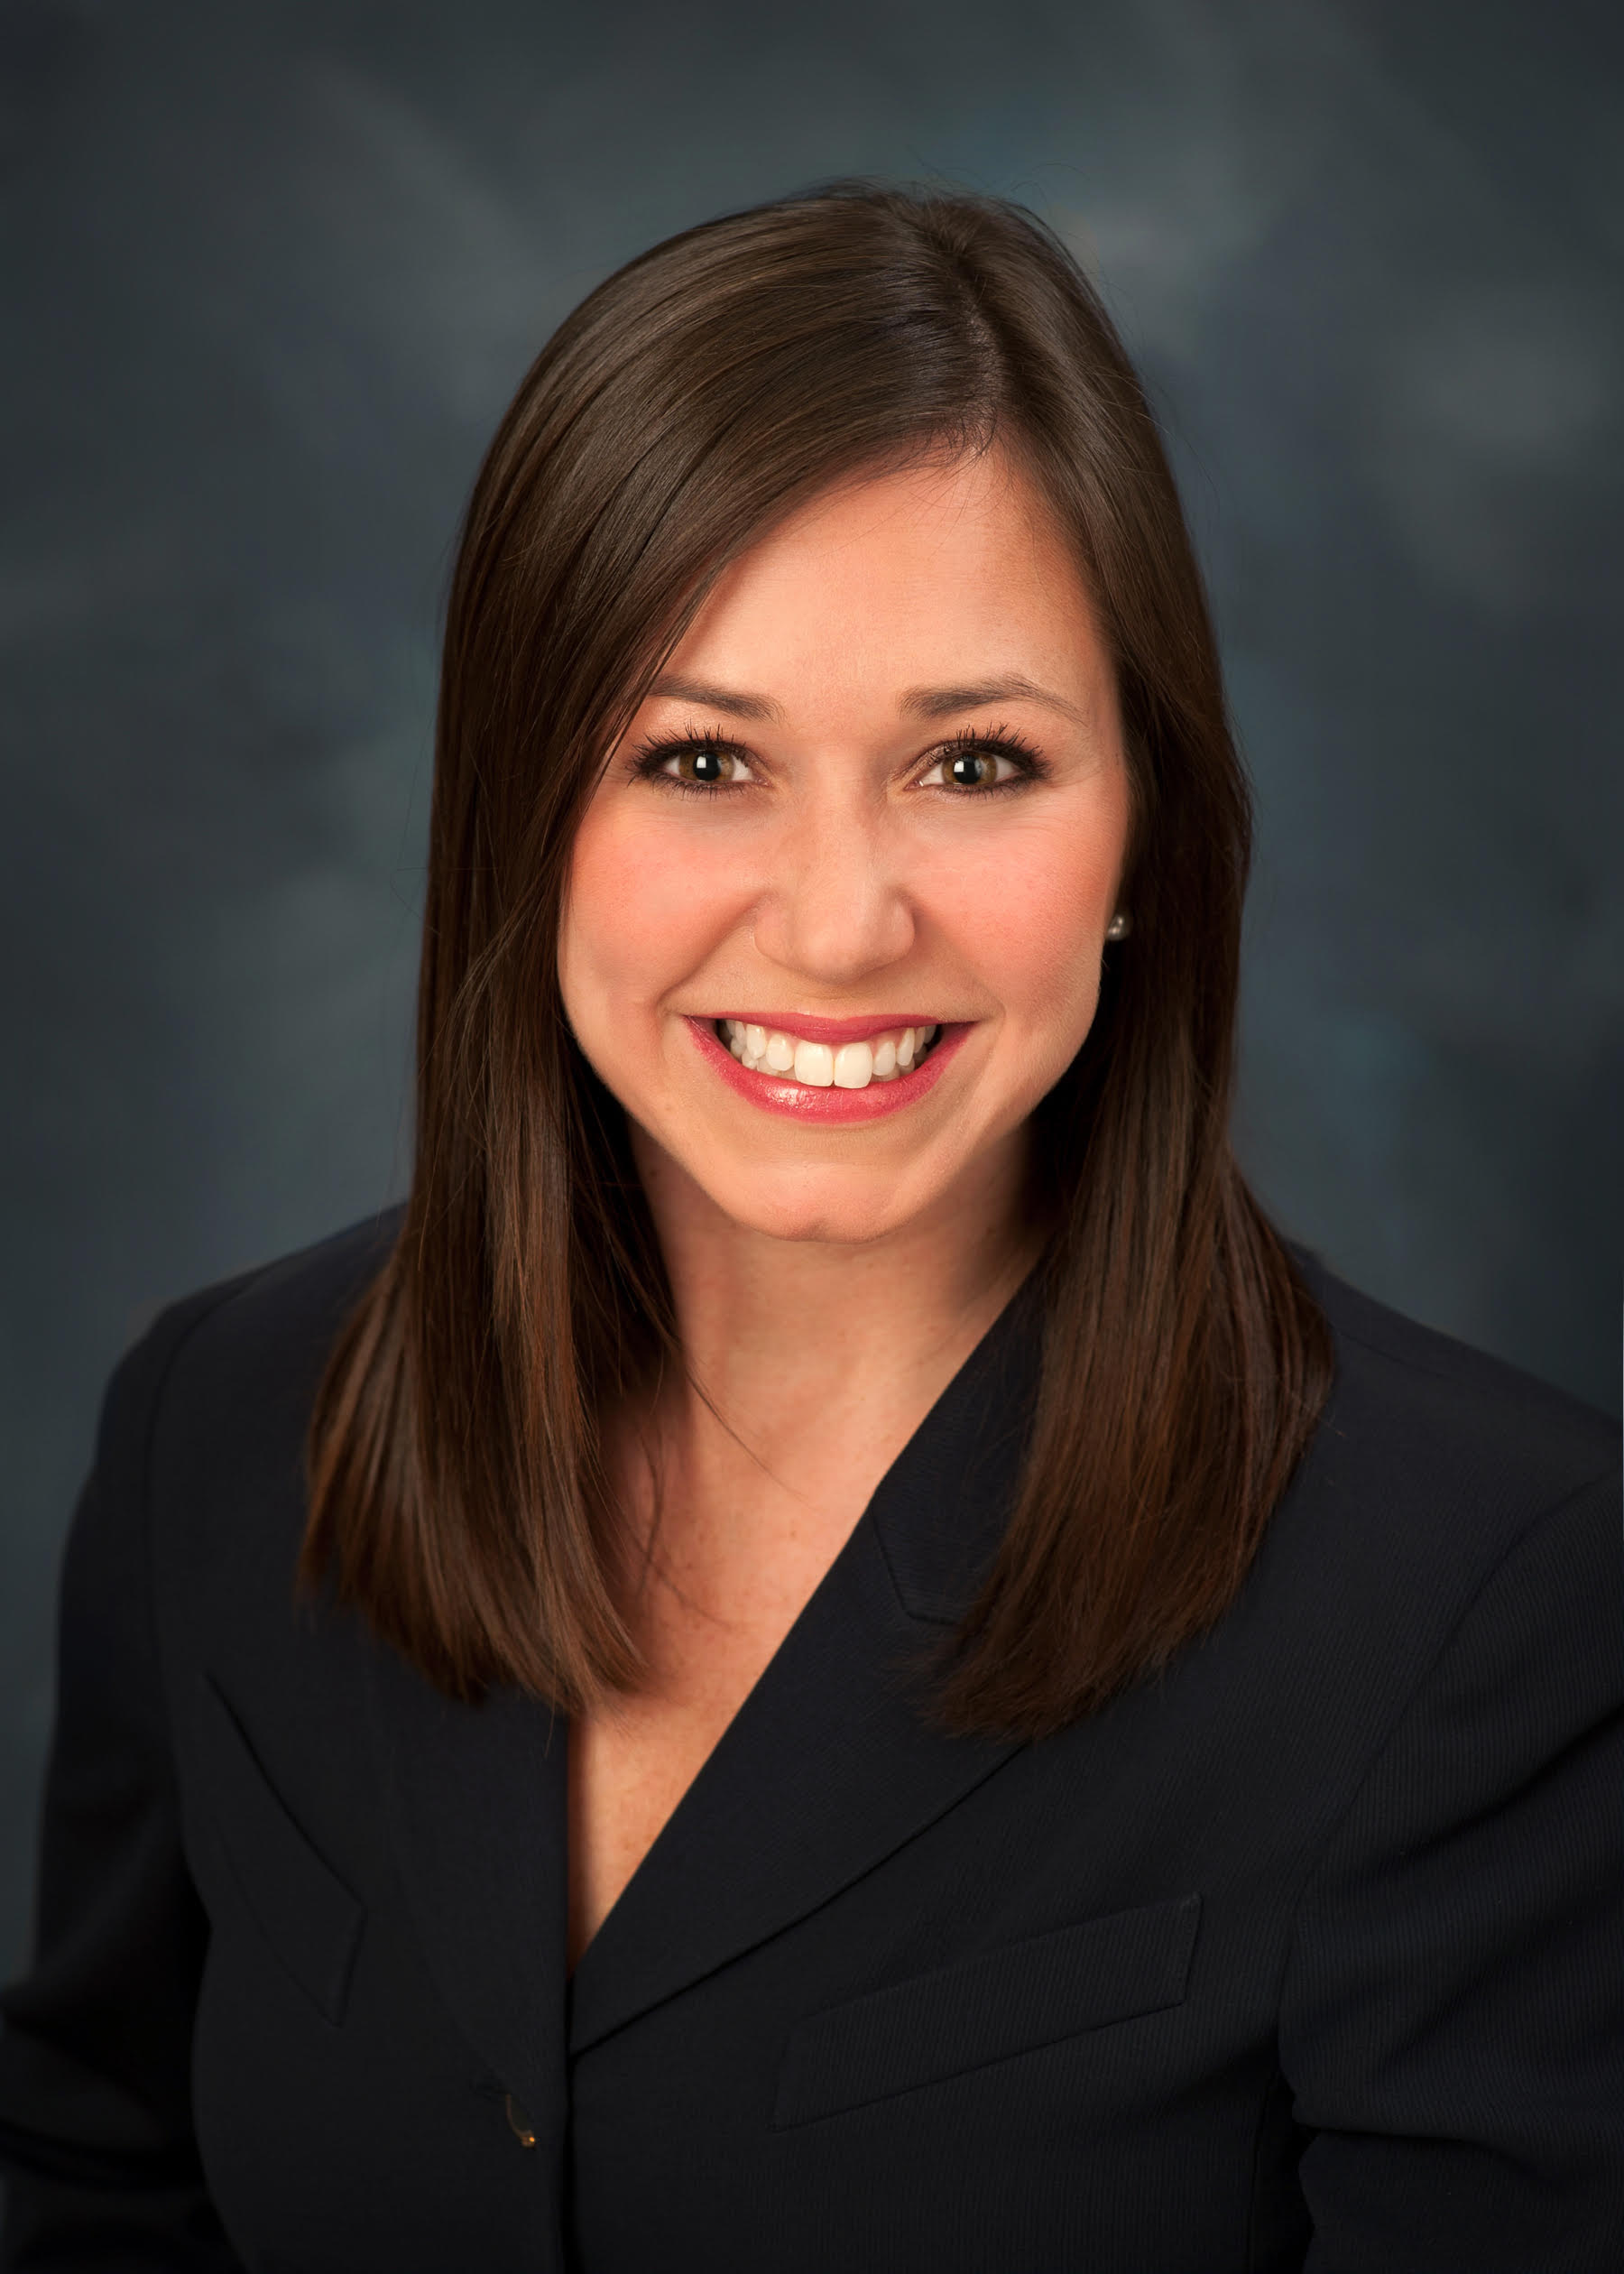 Katie Boyd Britt Named President of Business Council of Alabama – Business Council of Alabama